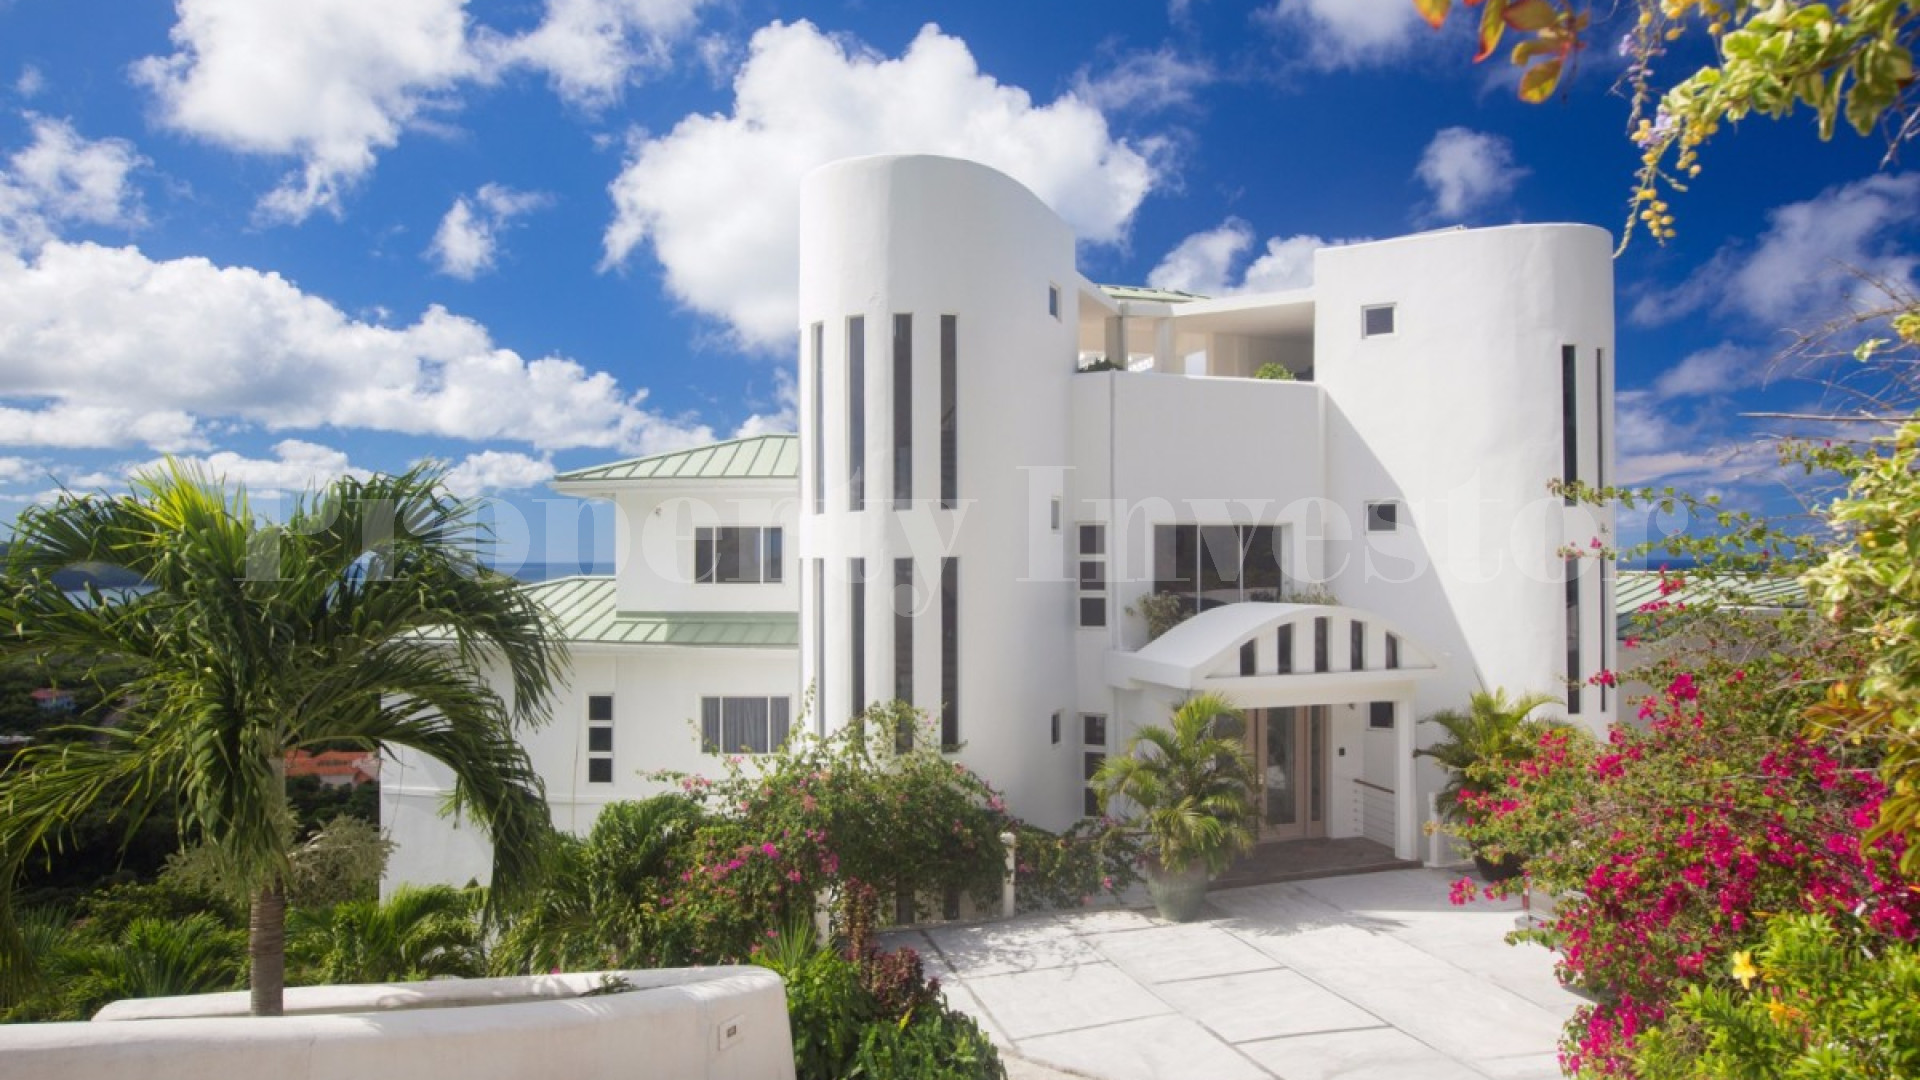 Stunning 6 Bedroom Hillside Designer Villa in St Lucia